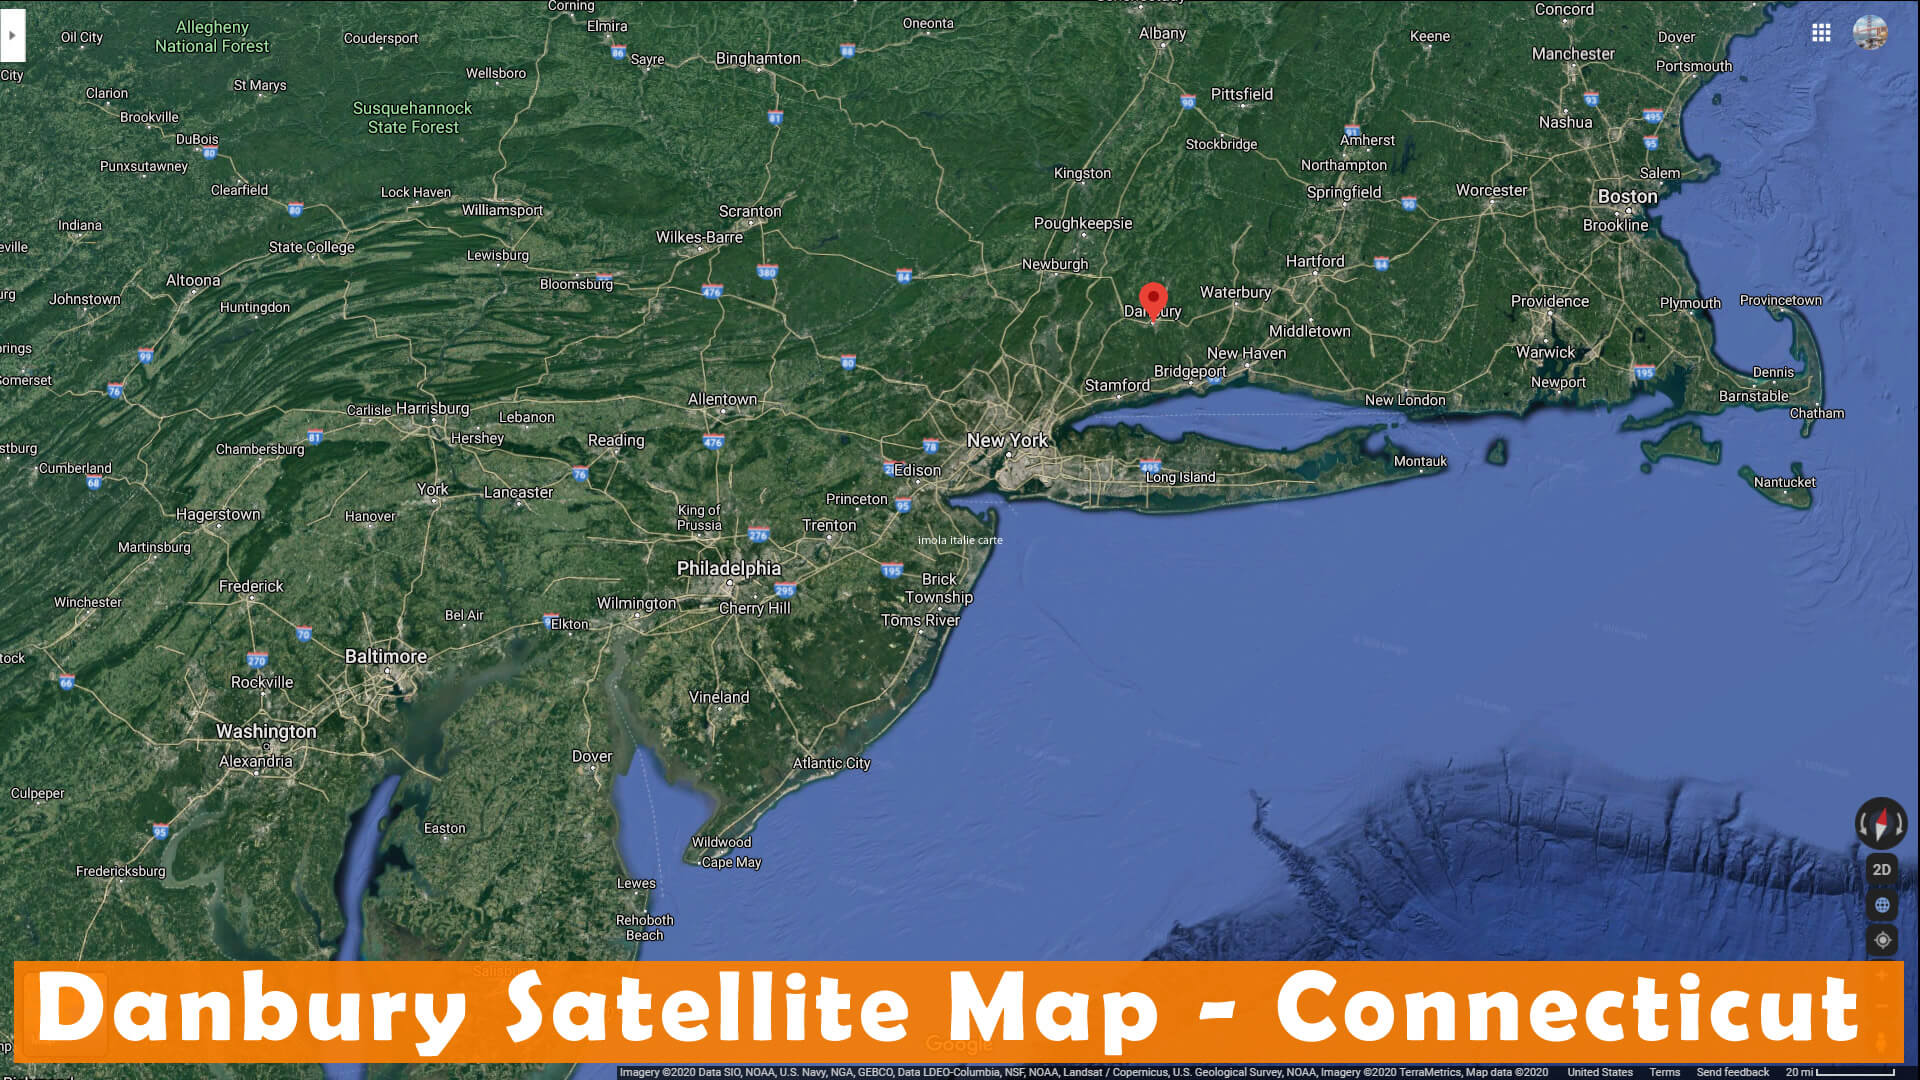 Danbury Satellite Map Connecticut